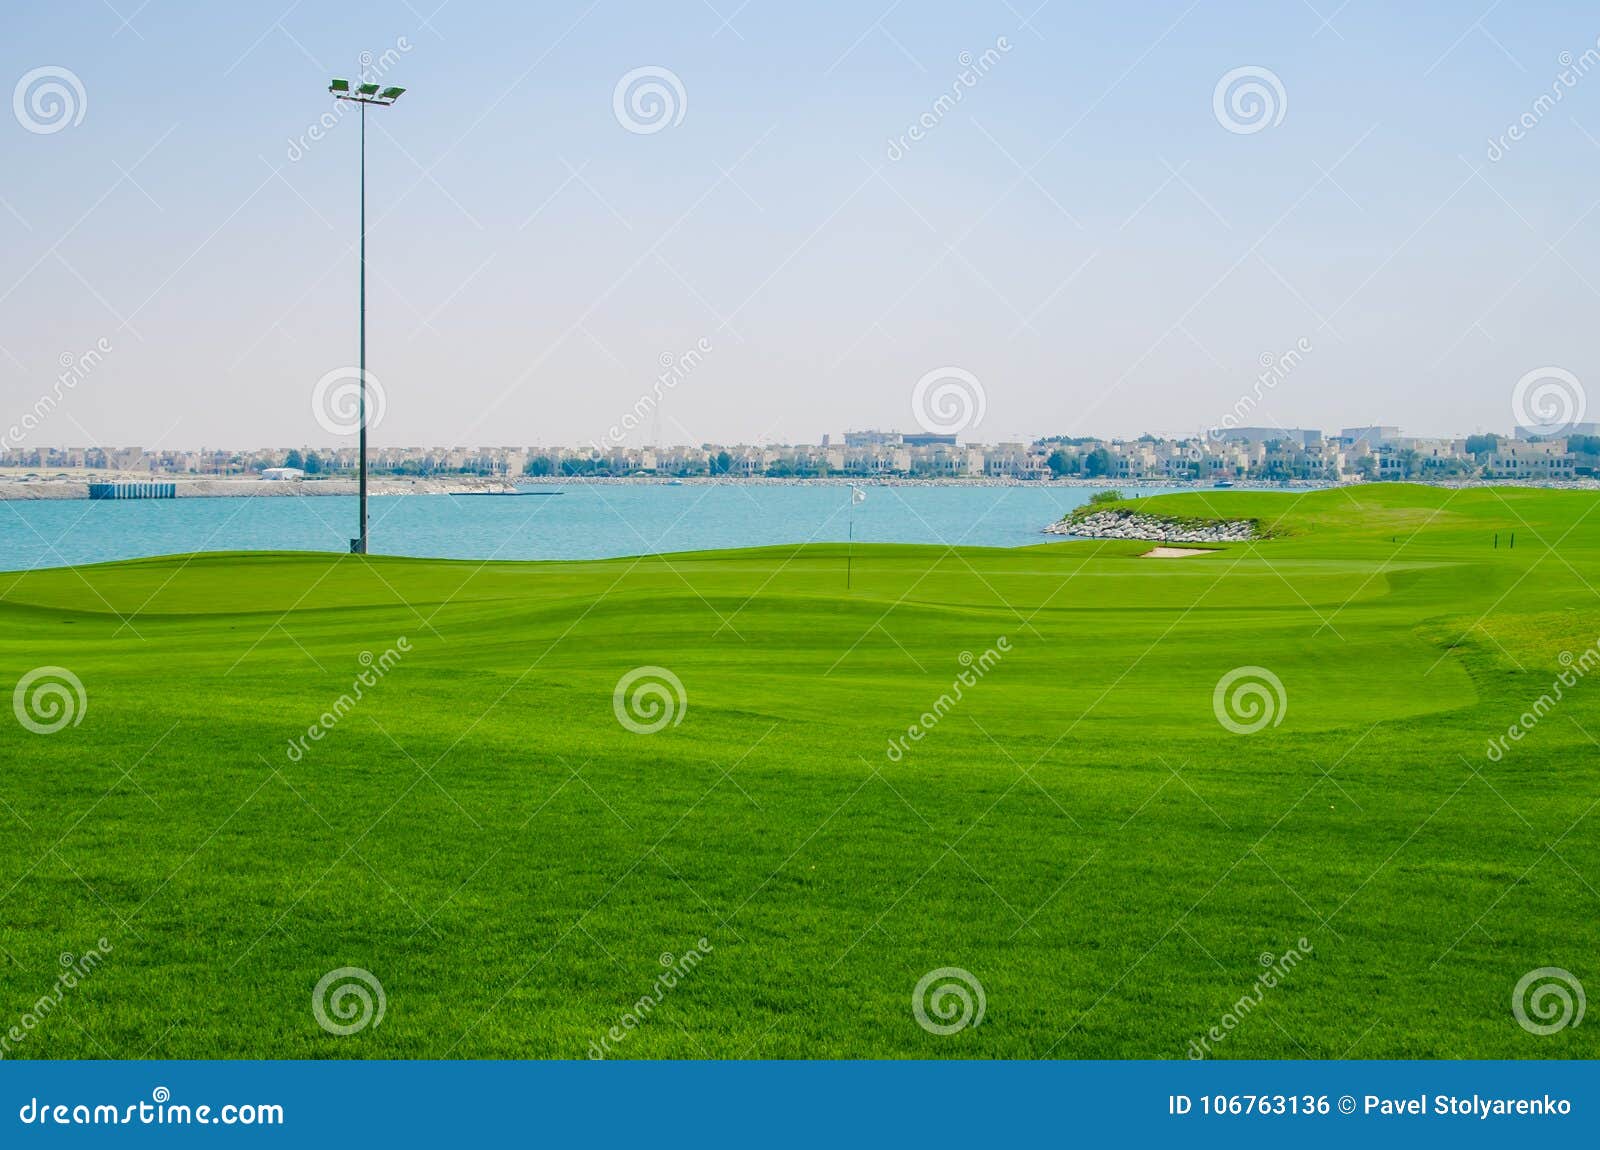 Luxury golf field. The luxury green golf field